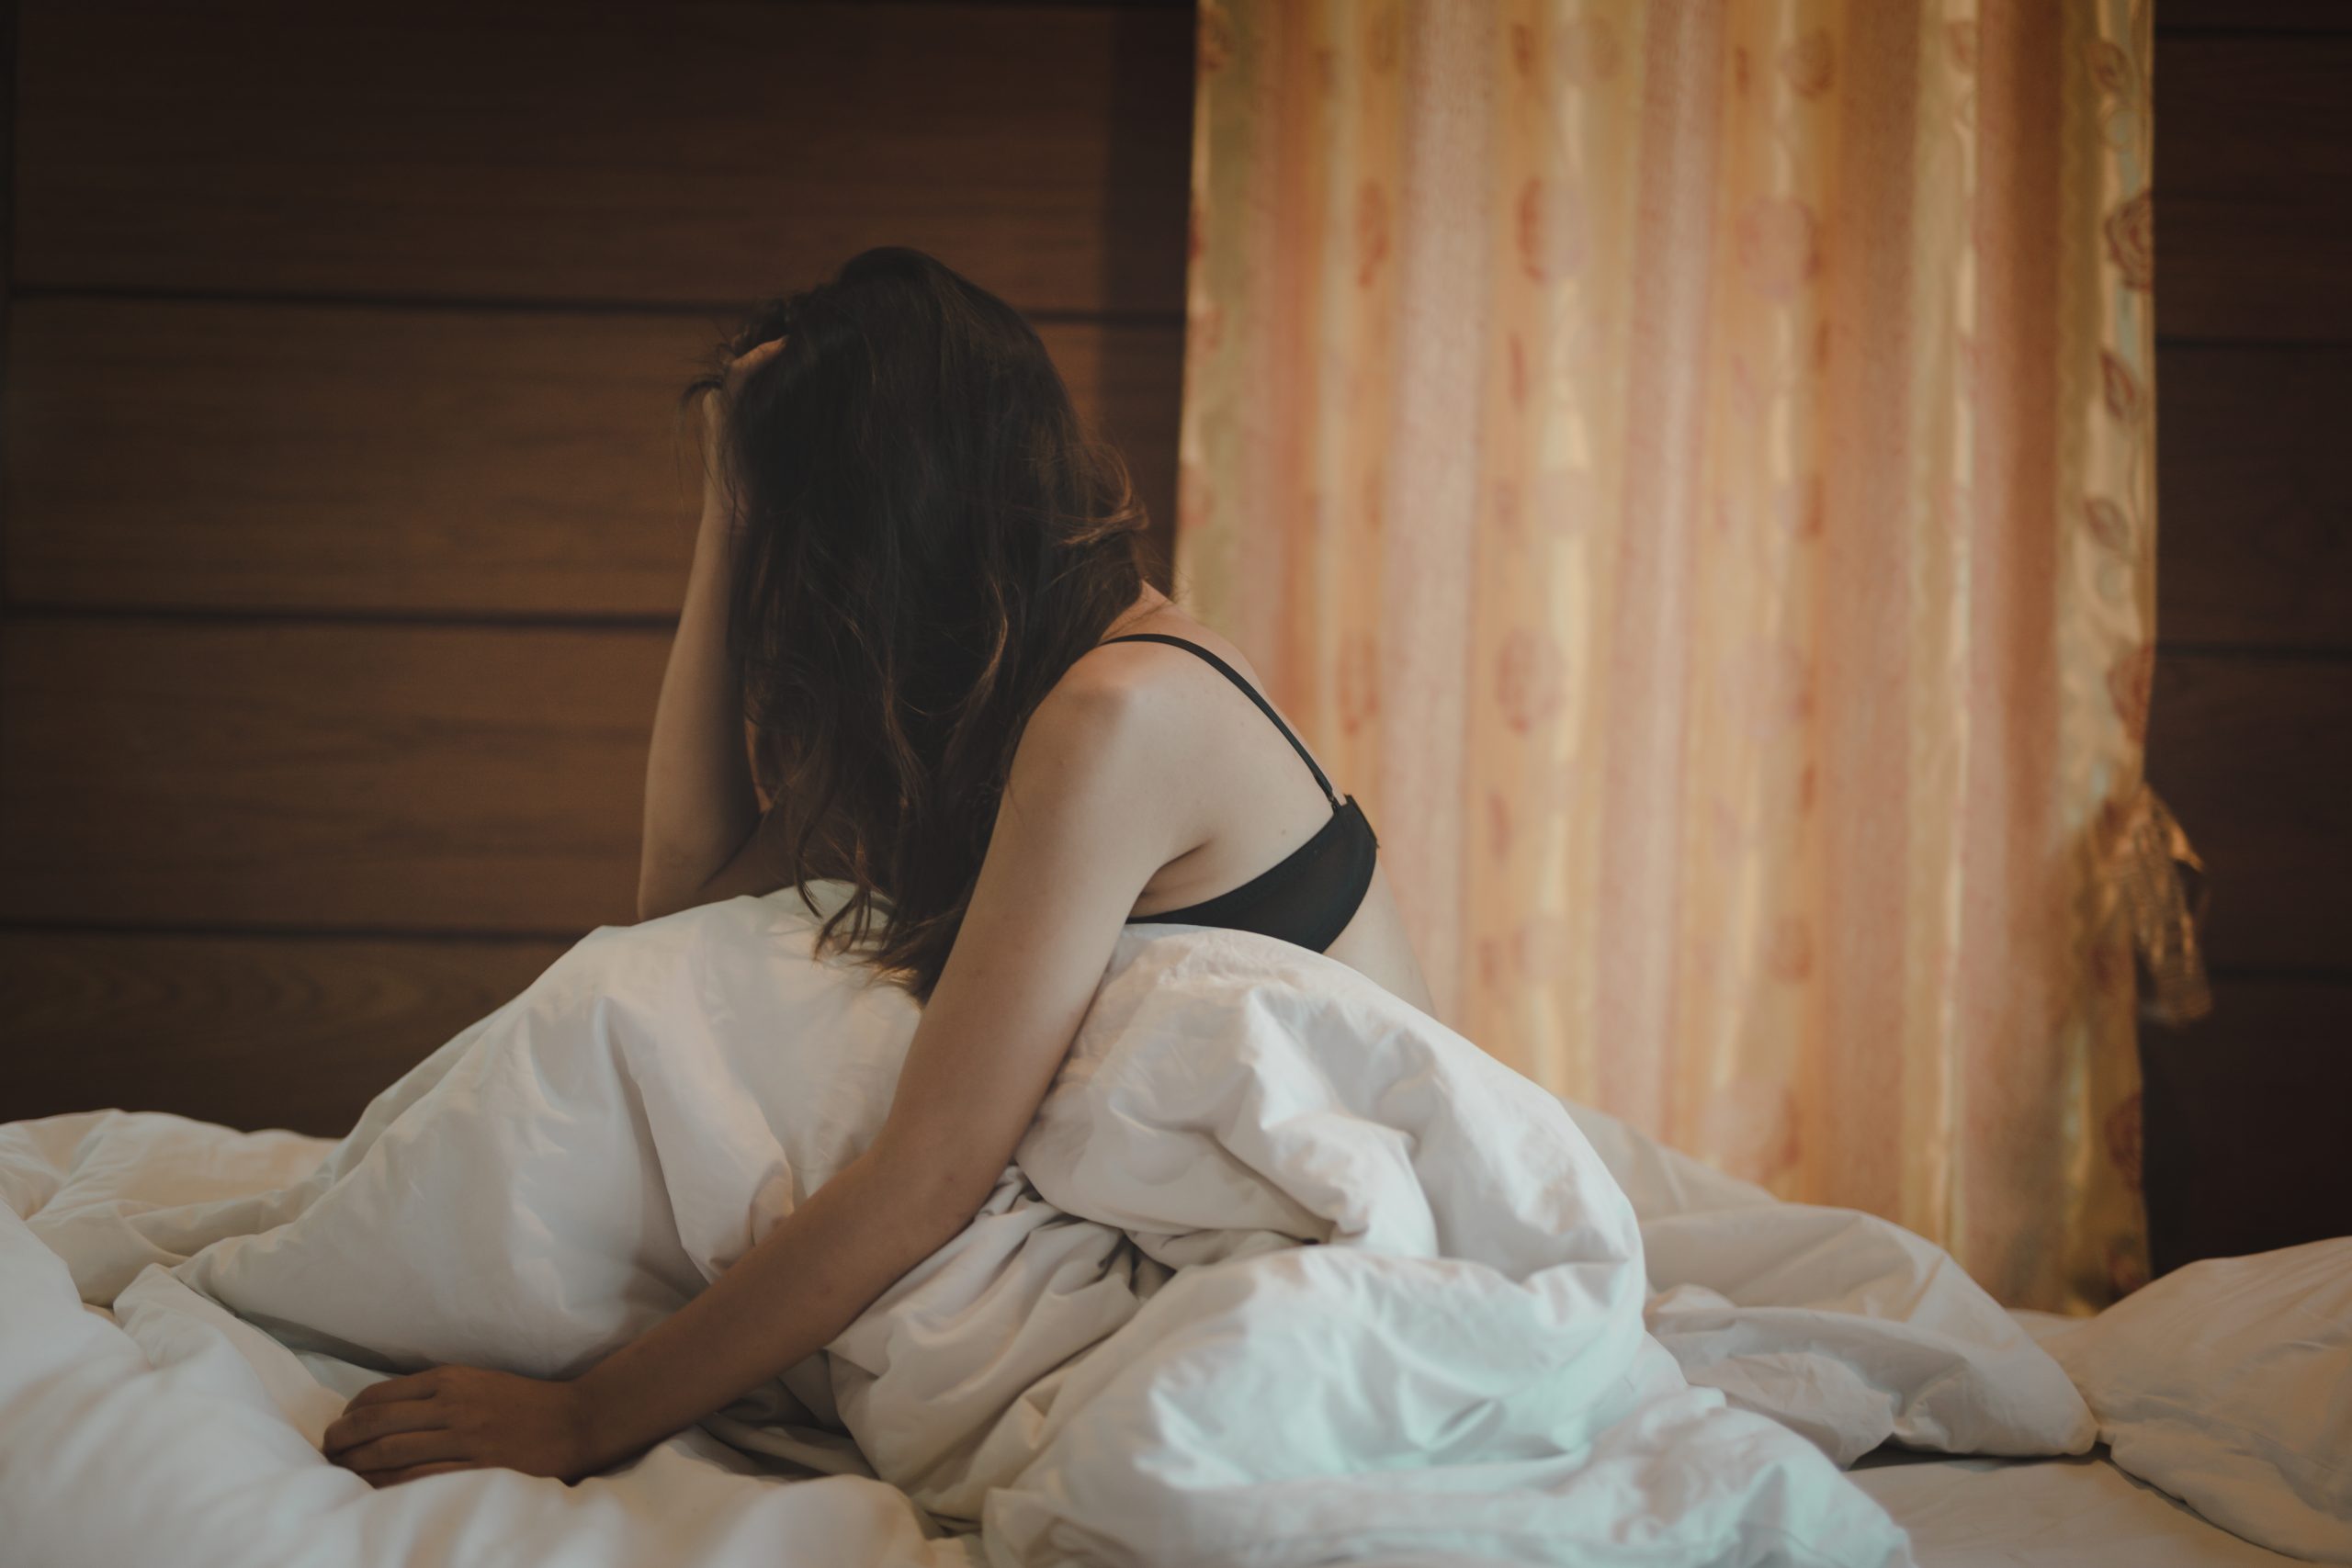 El placer sexual en solitario sigue siendo una tarea pendiente para muchas mujeres. Foto:Shutterstock